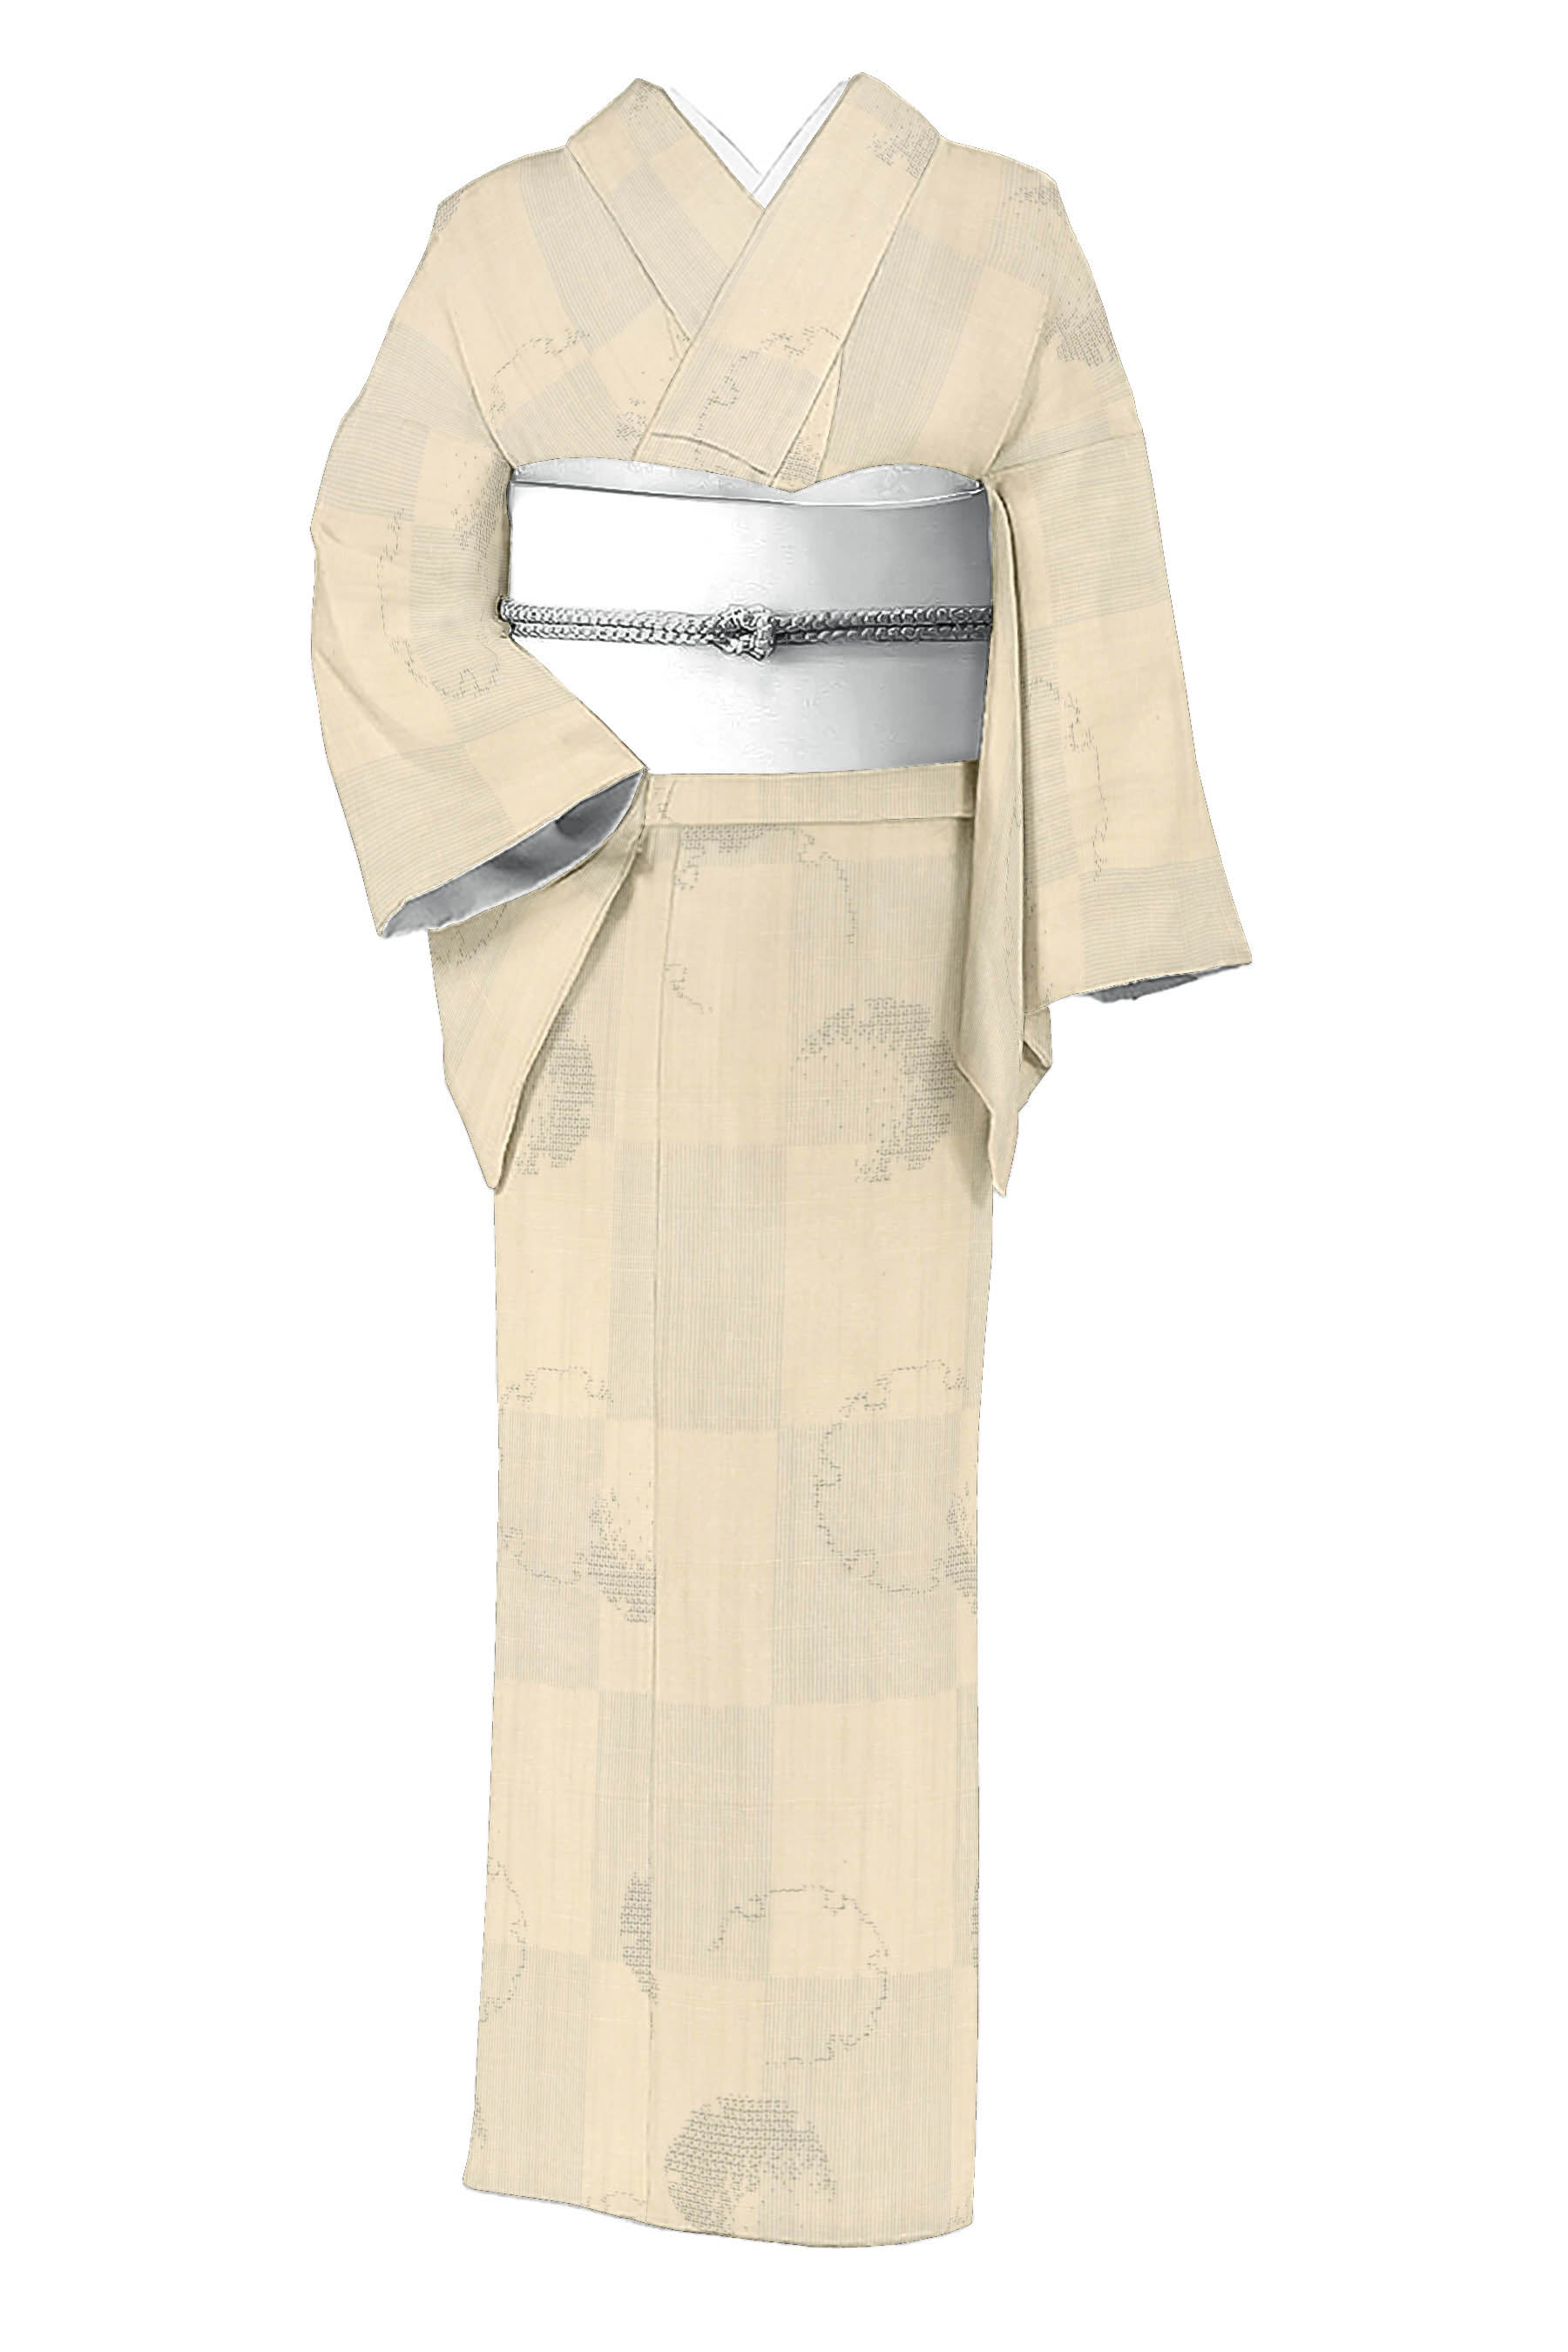 ☆真綿紬の二部式帯 m3846 - 着物・浴衣